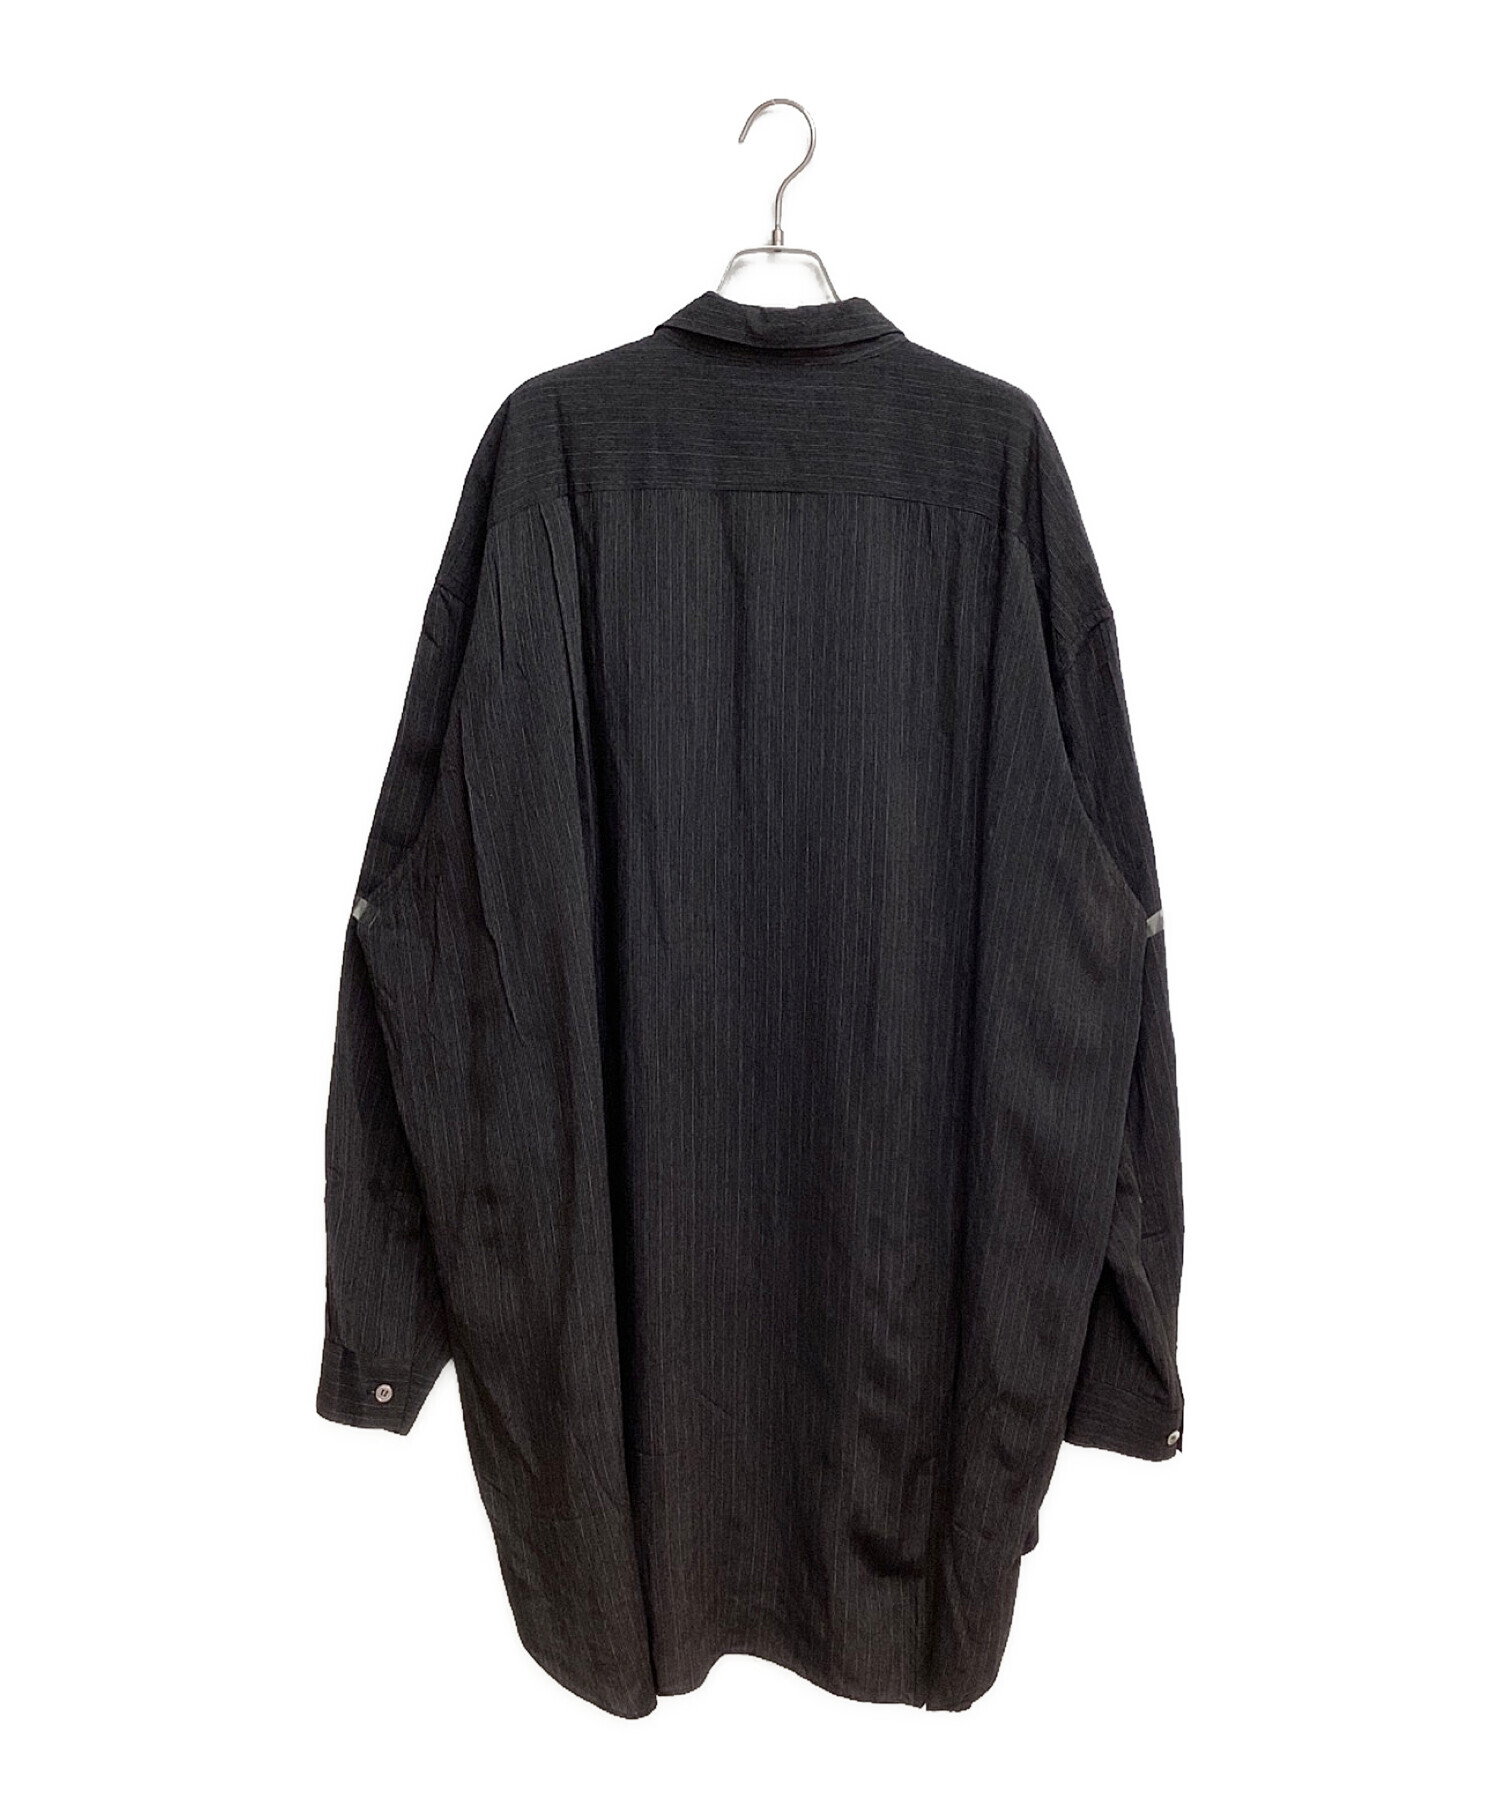 Yohji Yamamoto pour homme (ヨウジヤマモト プールオム) 96AW 脱色期 ドットデザインレーヨンシャツ ブラック サイズ:M